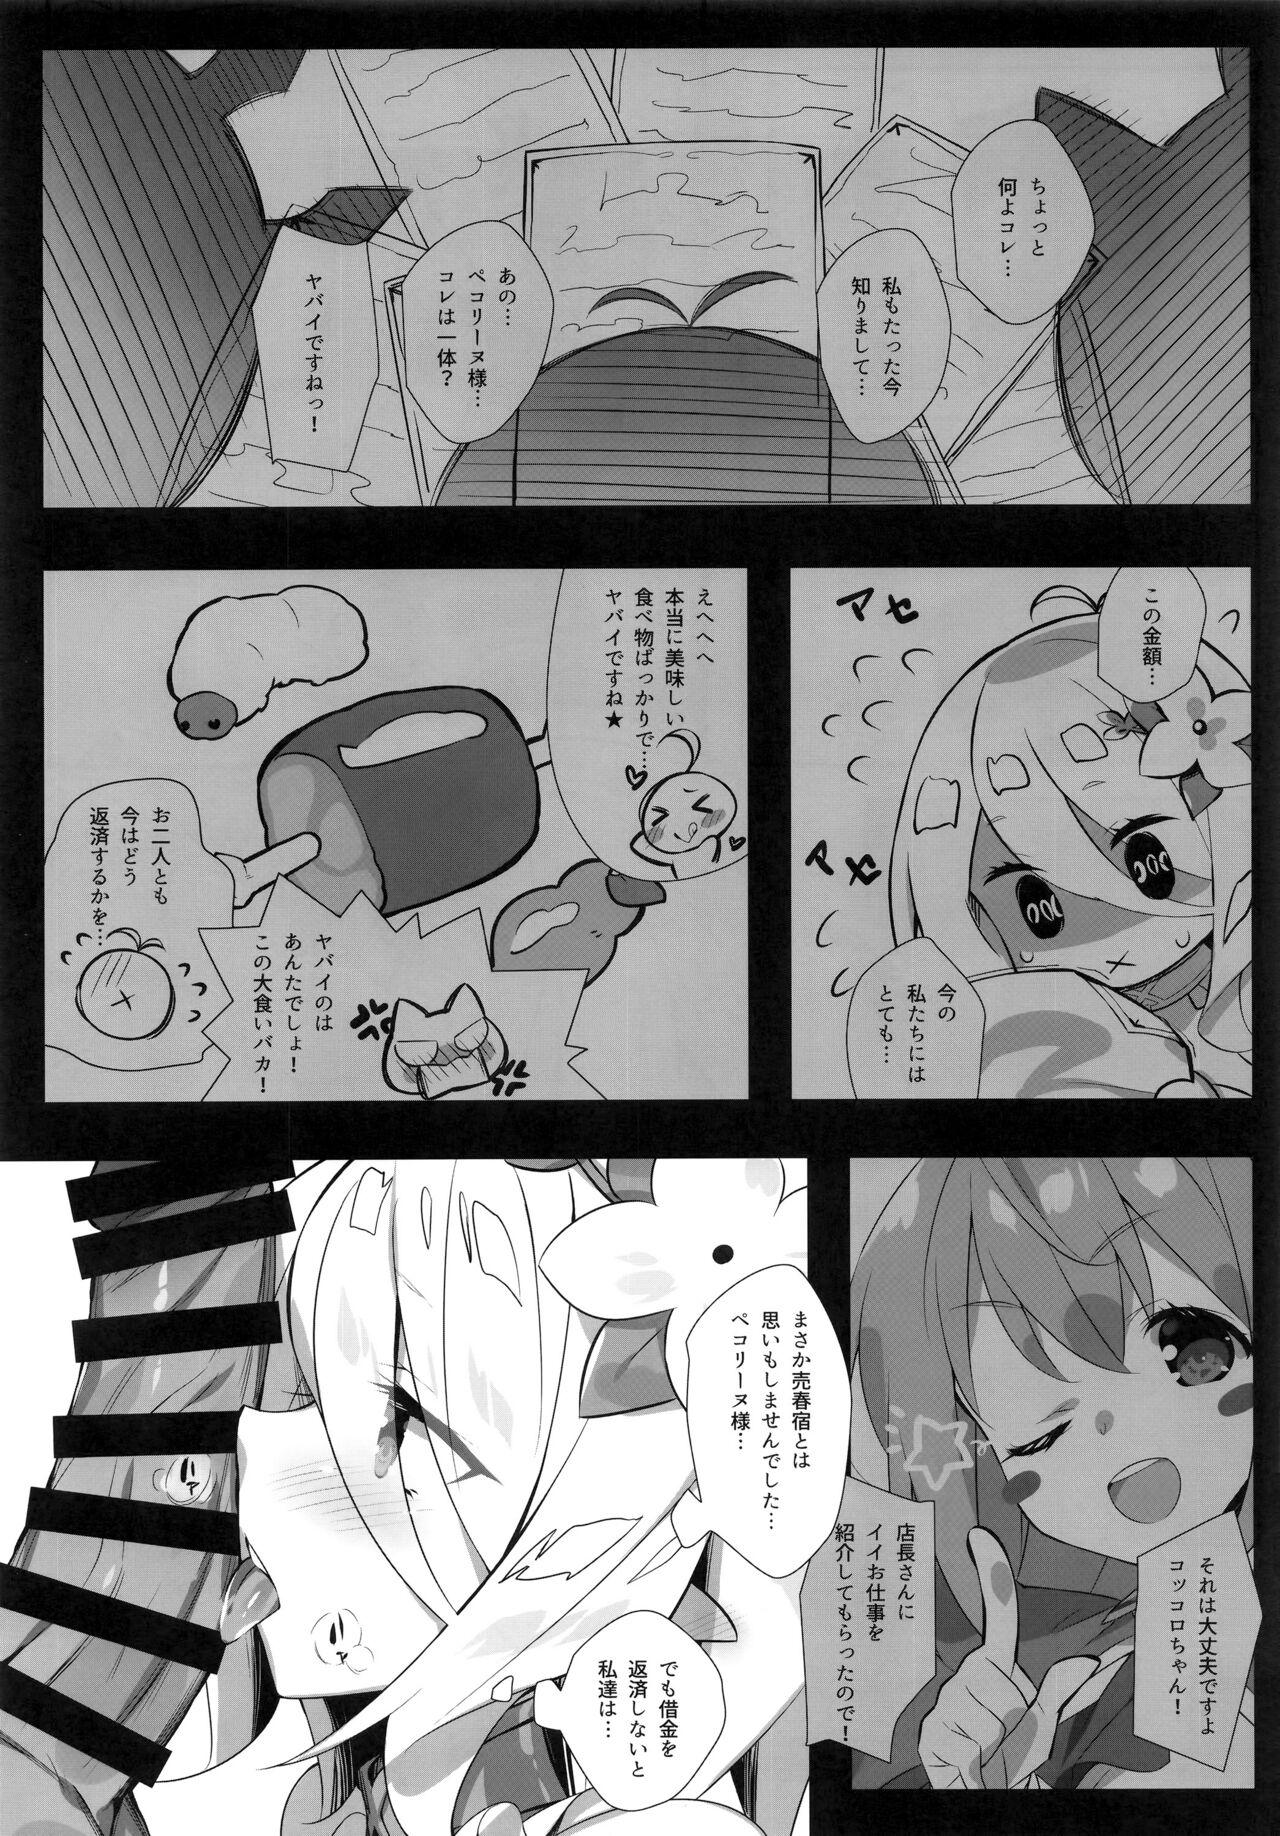 Gayclips Aruji-sama no Tame nara... - Princess connect Highheels - Page 4